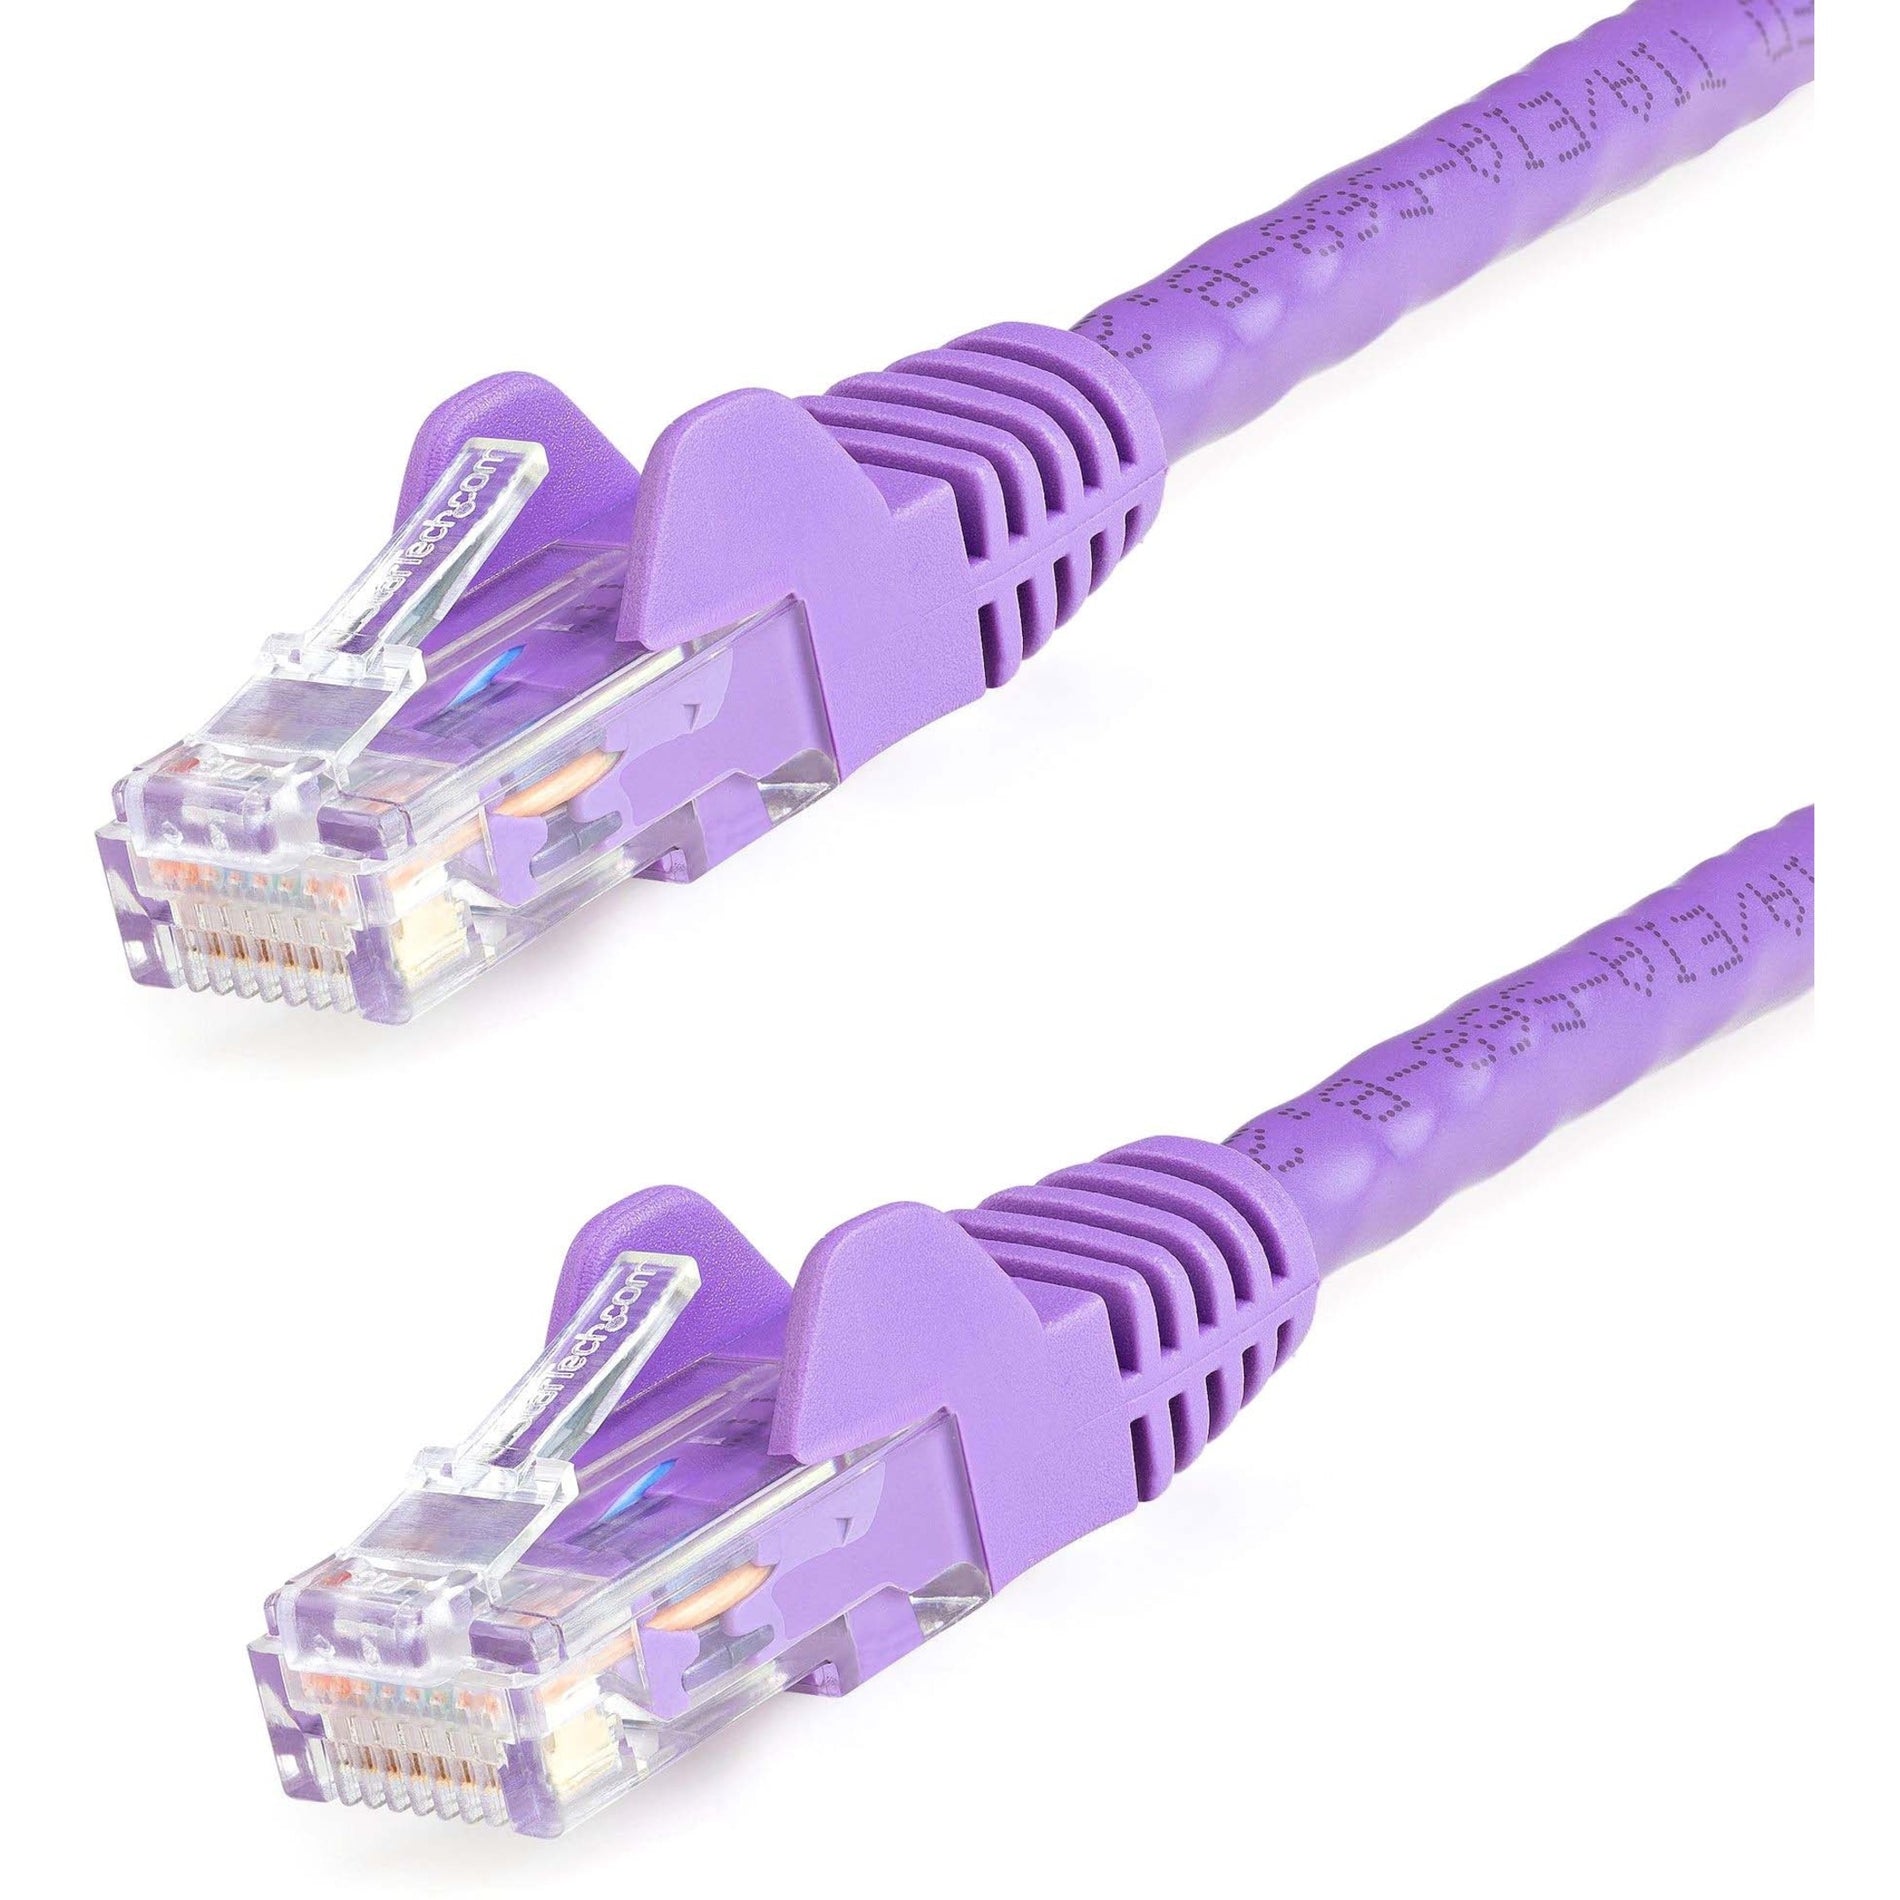 Marca: StarTech.com Cable de parche UTP Cat6 sin enganches morado de 3 pies Garantía de por vida Velocidad de transferencia de datos de 10 Gbit/s